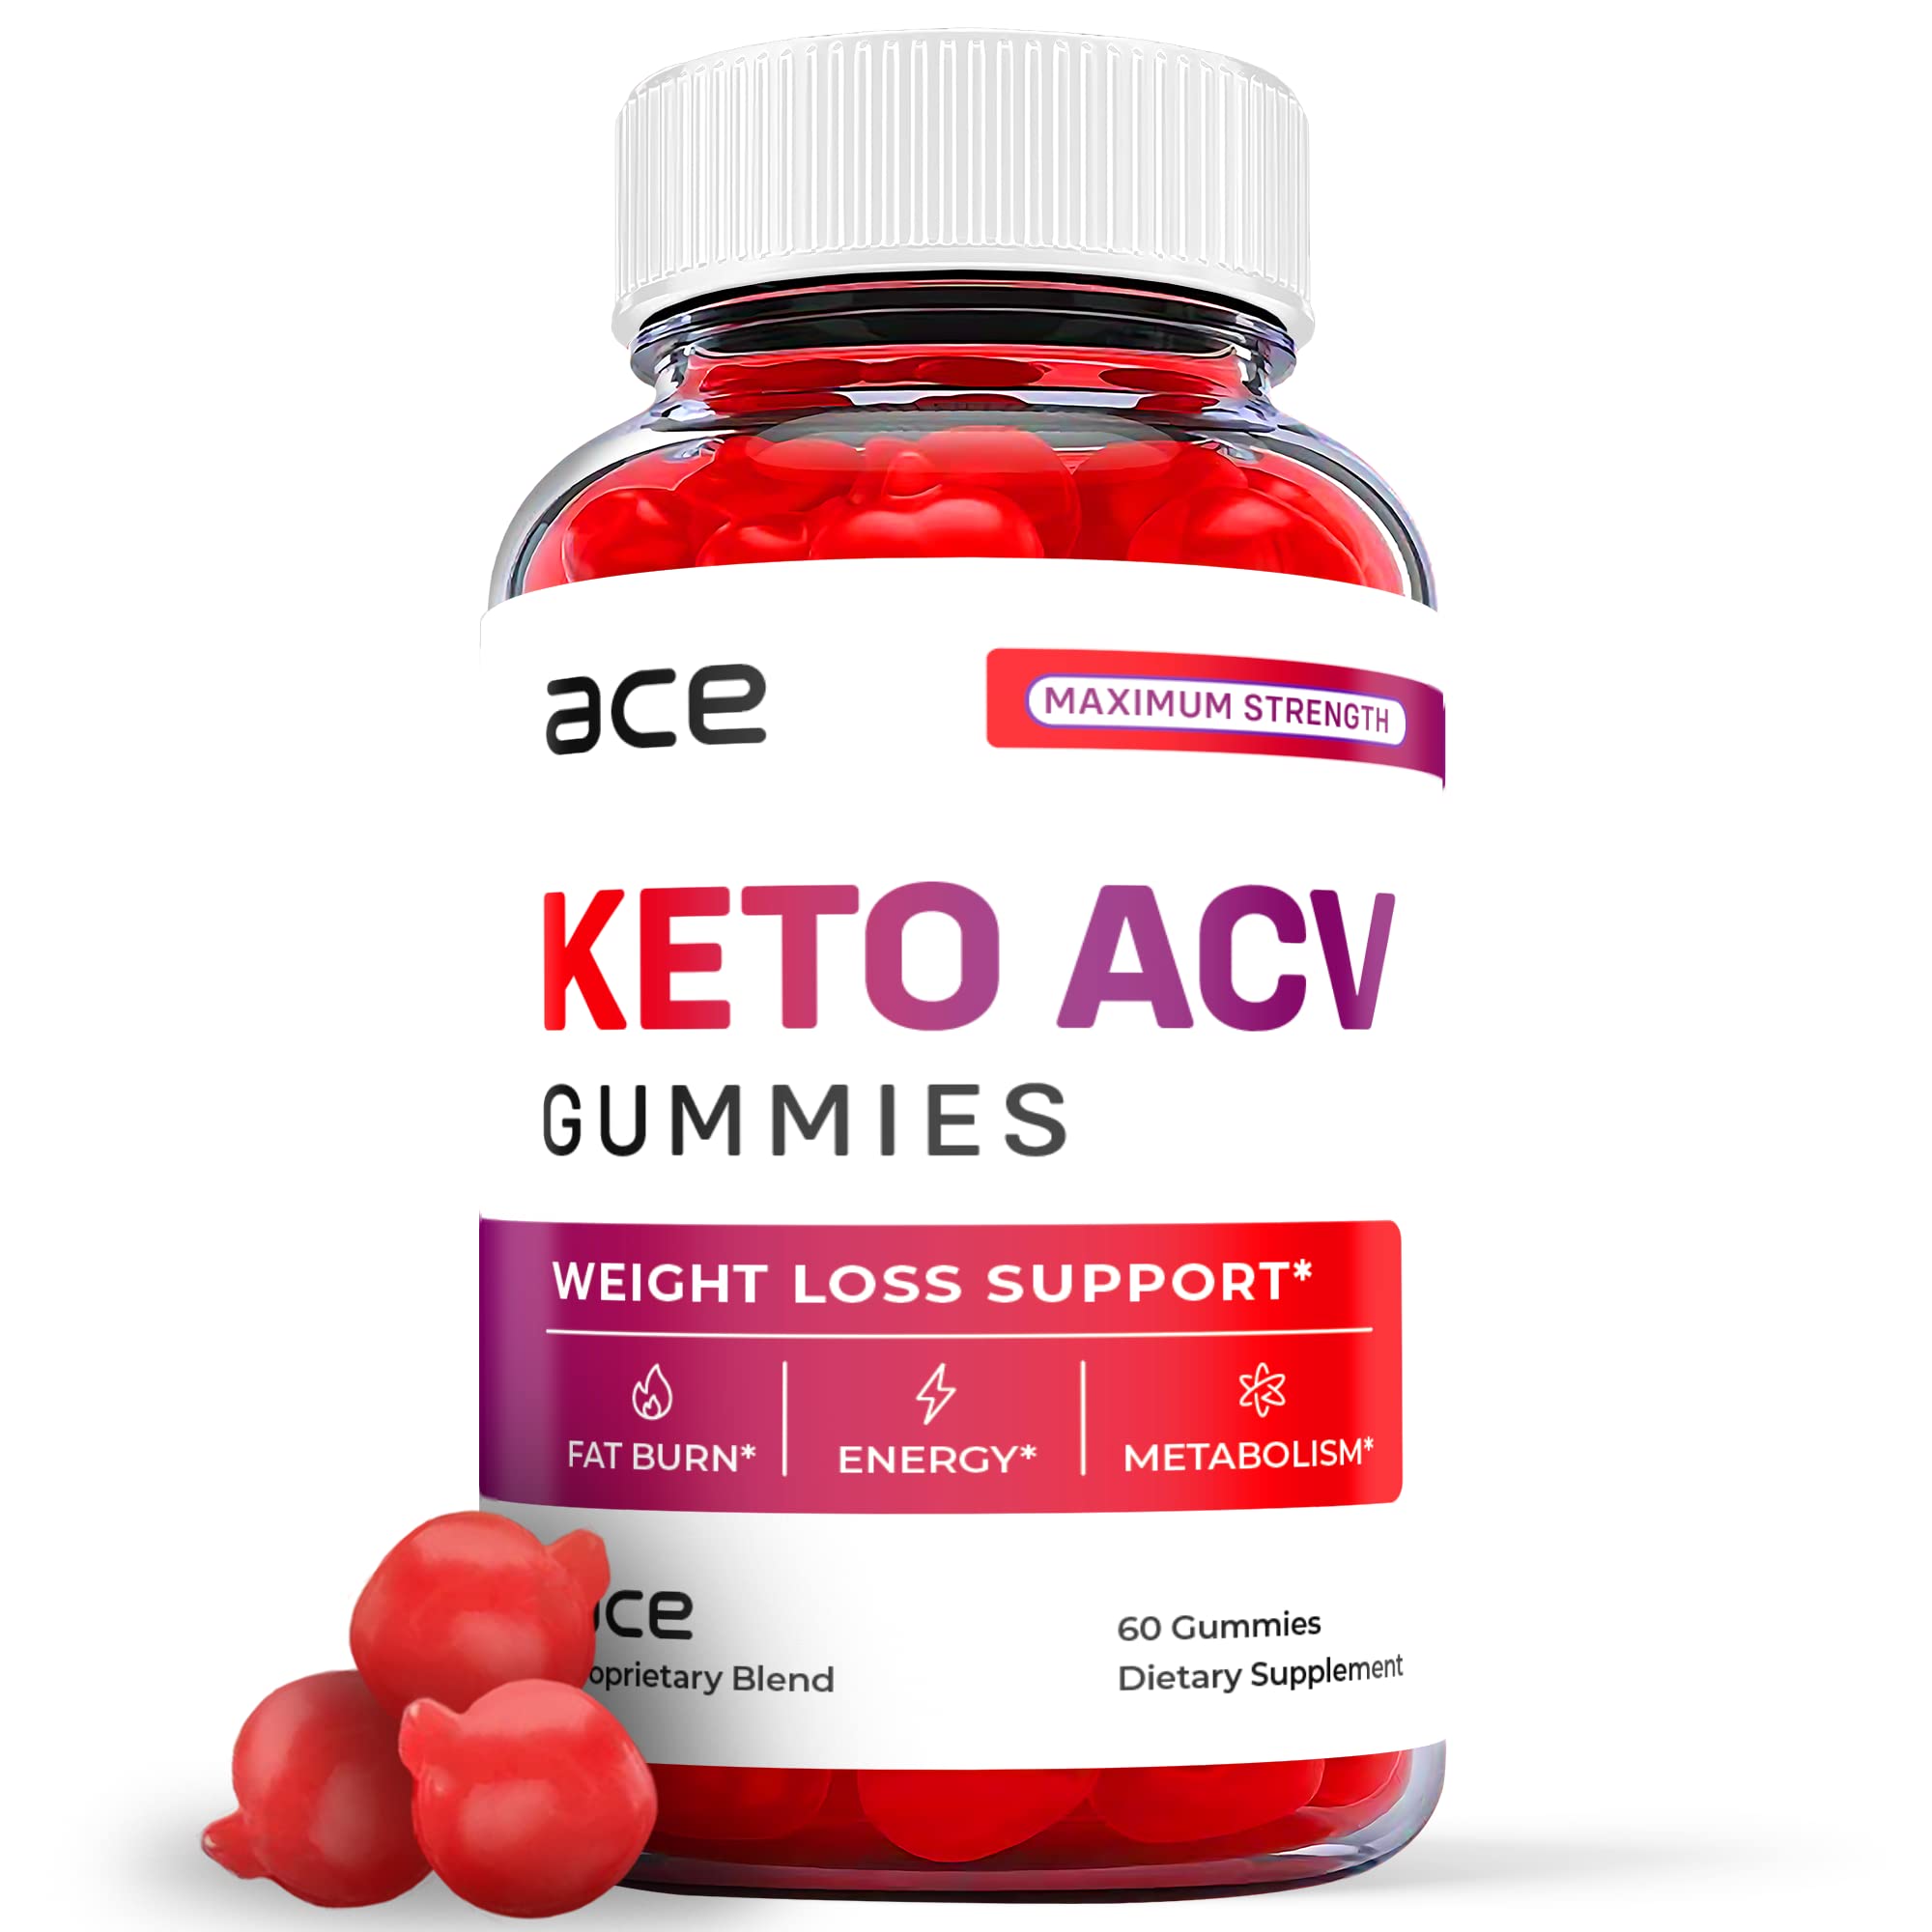 Ace Keto ACV Gummies.jpg